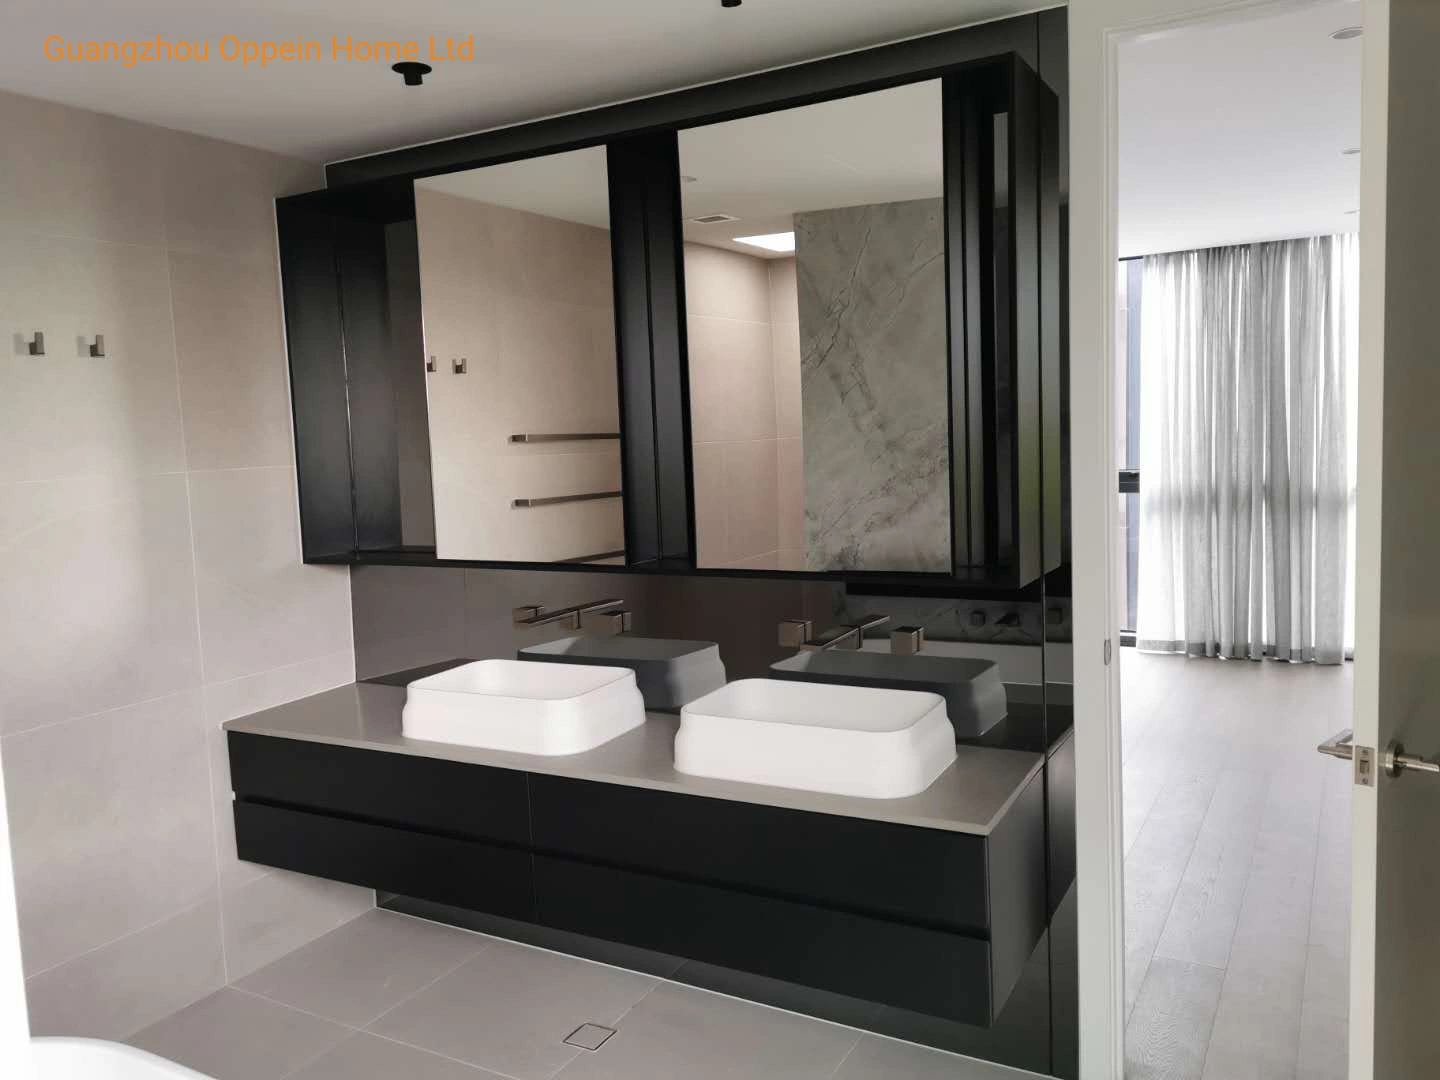 Personalizar el diseño moderno armario Armario de Cocina de diseño 3D gratis toda la casa de personalización de muebles de baño Ropa interior de la puerta vestido de gabinetes de cocina